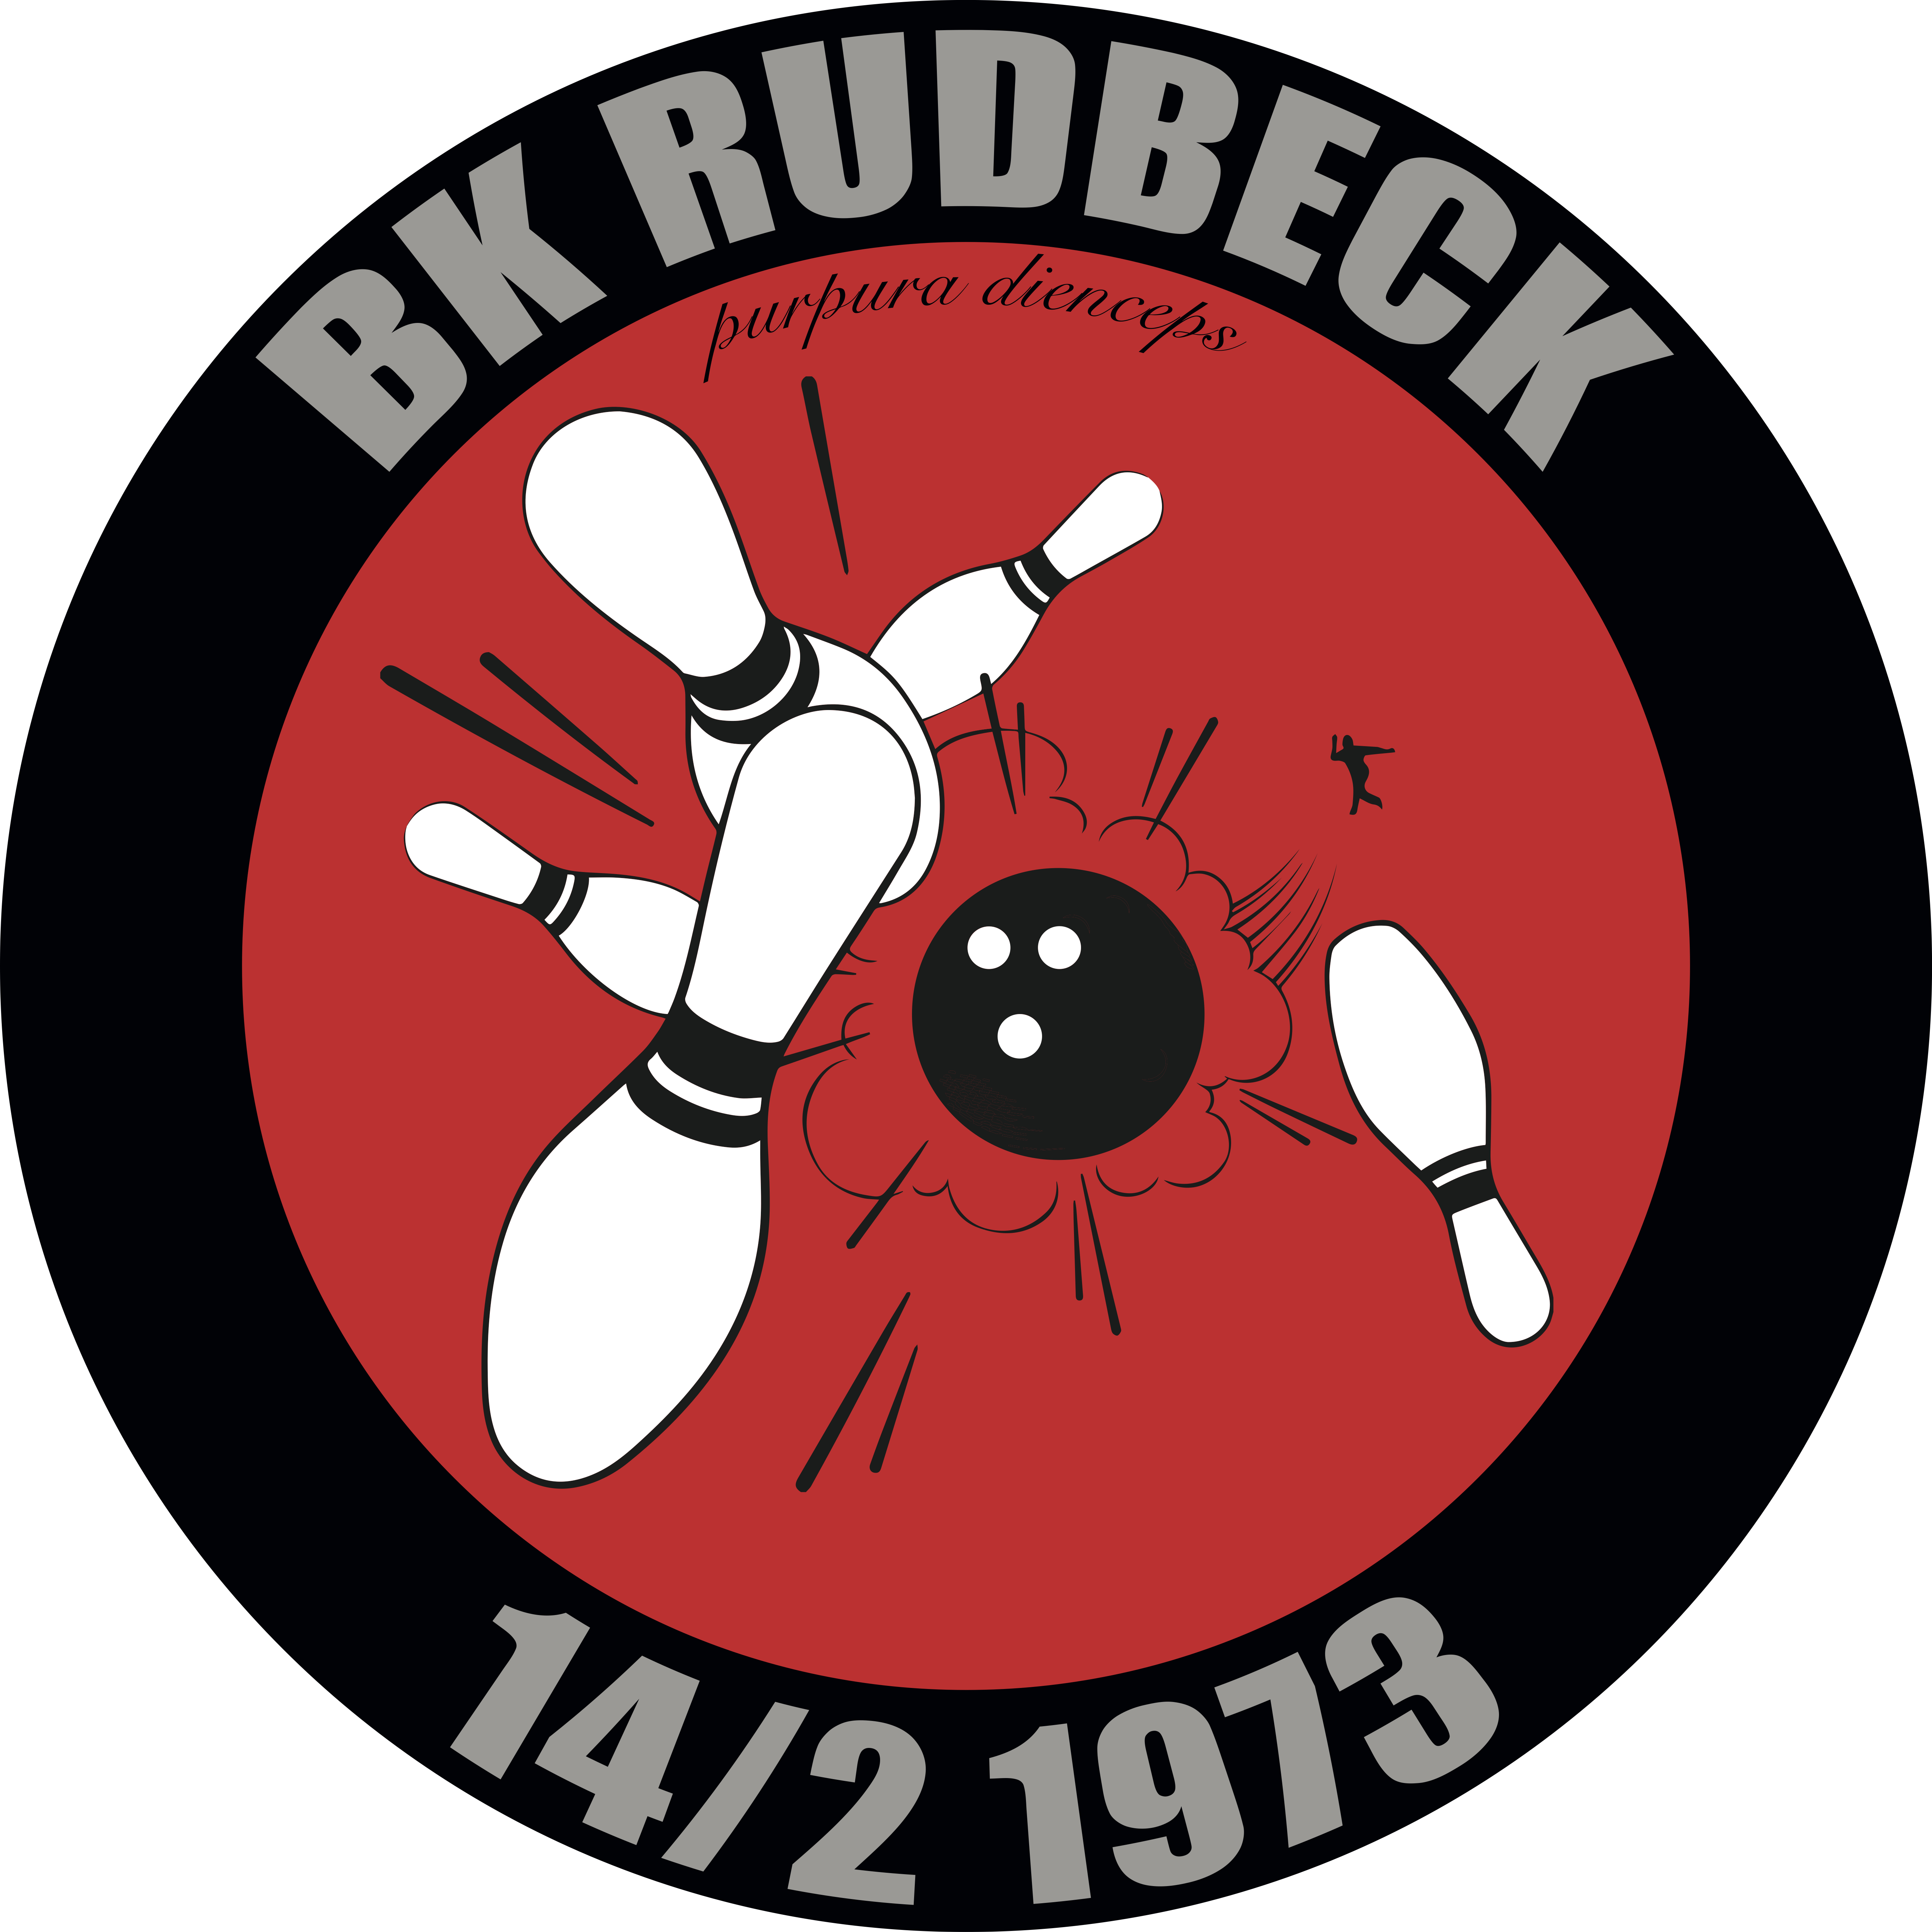 BK Rudbeck